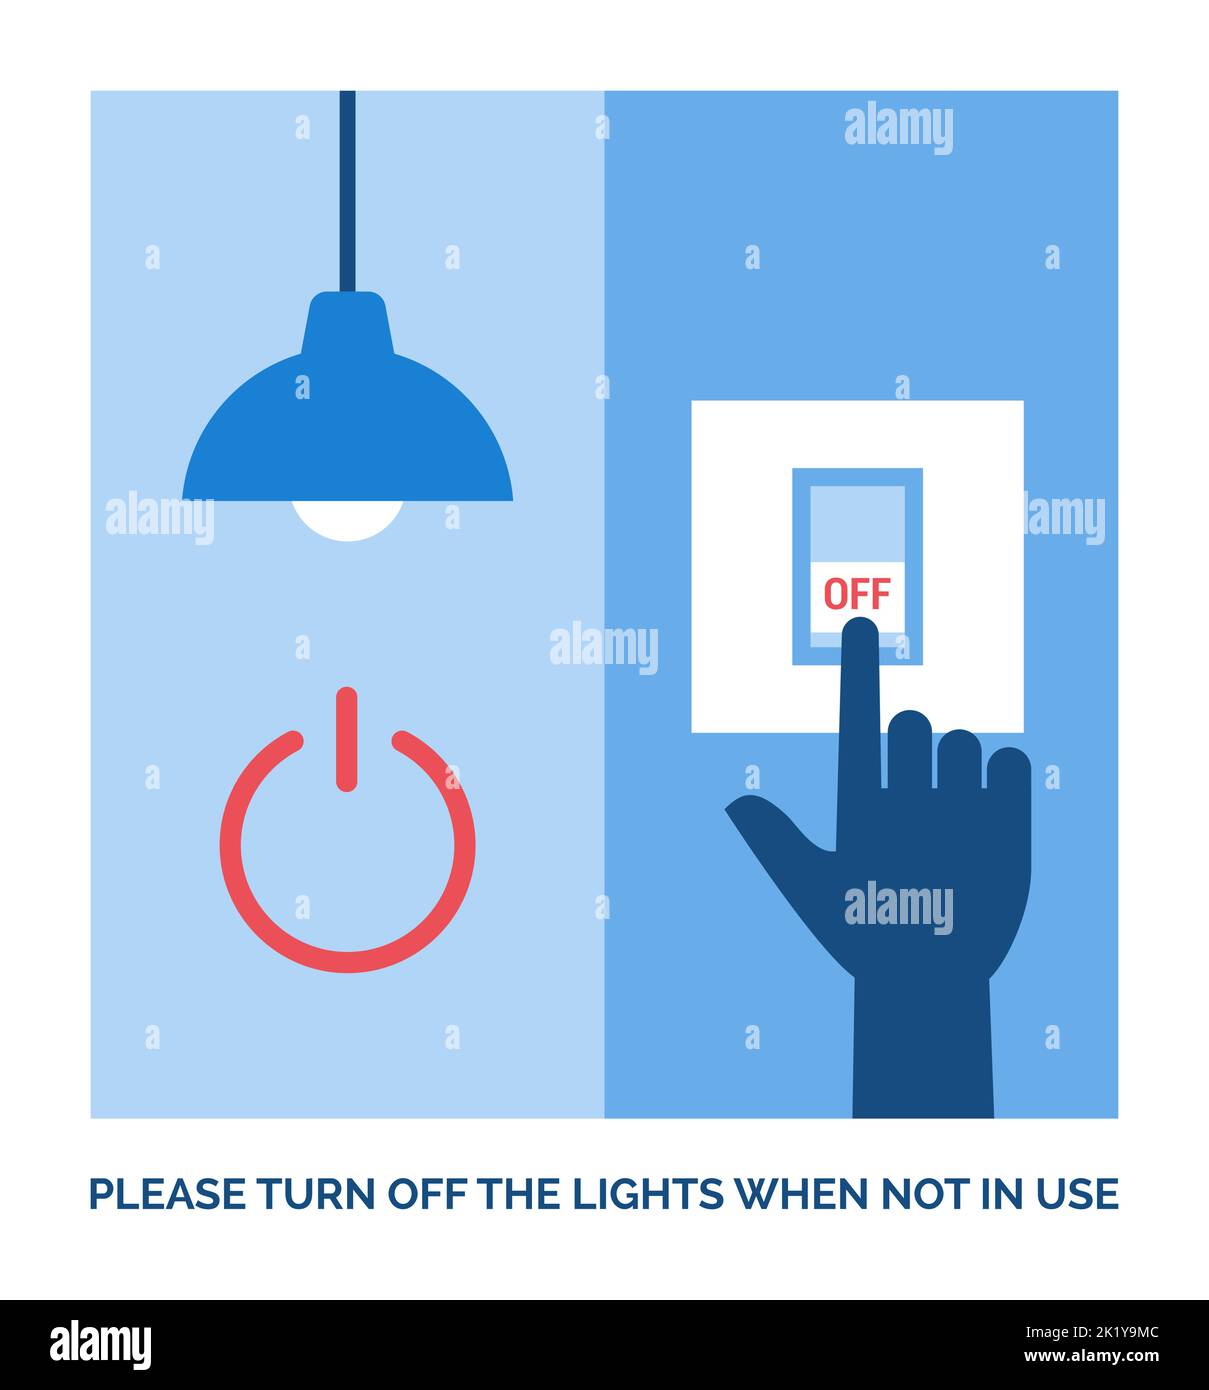 Stile di vita ecocompatibile: Spegnere le luci quando non sono in uso Illustrazione Vettoriale